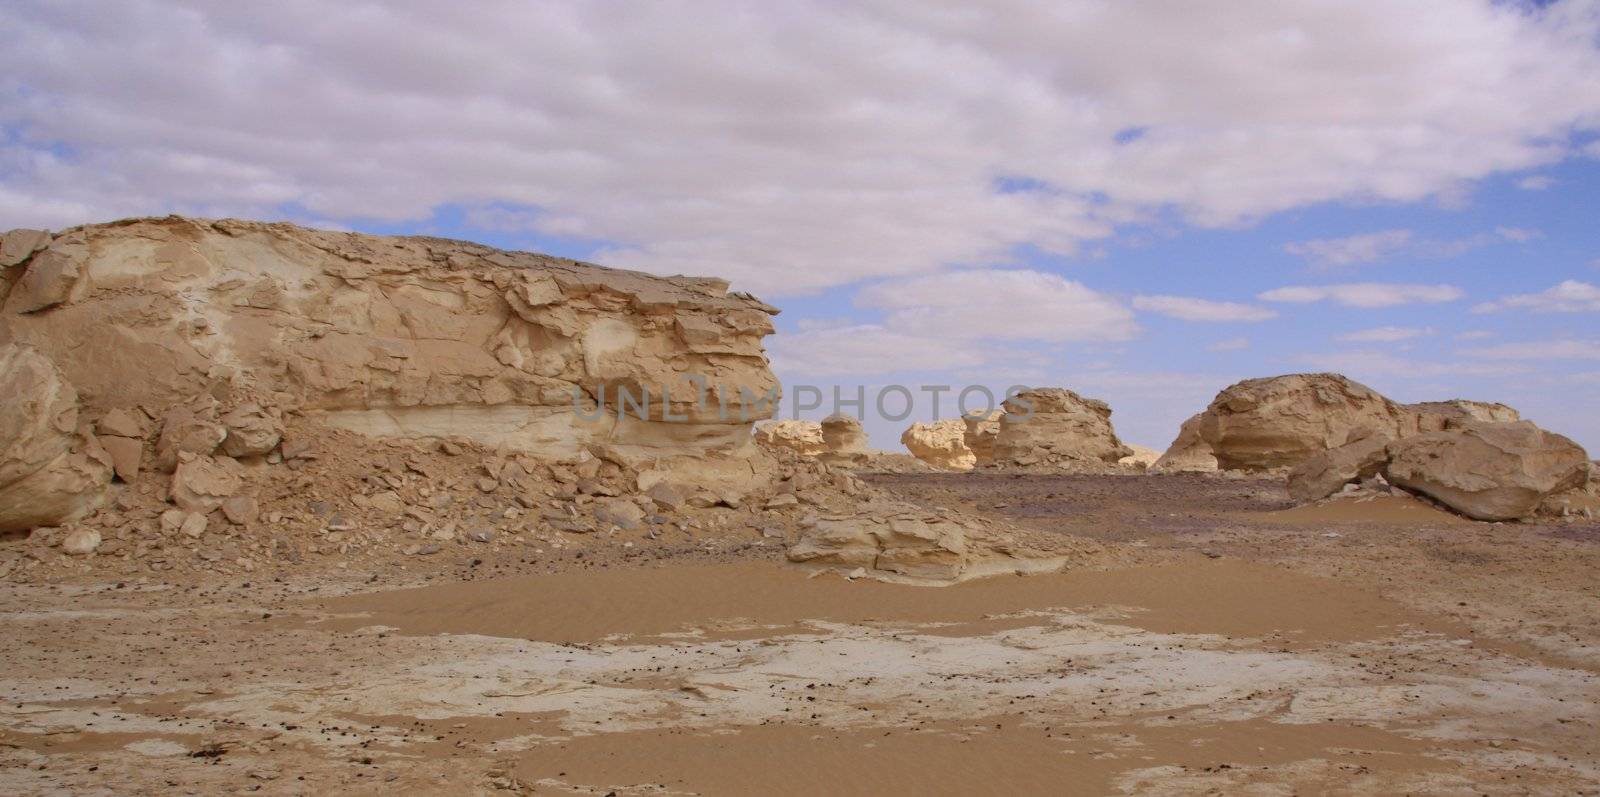  White Desert, Egypt  by jnerad